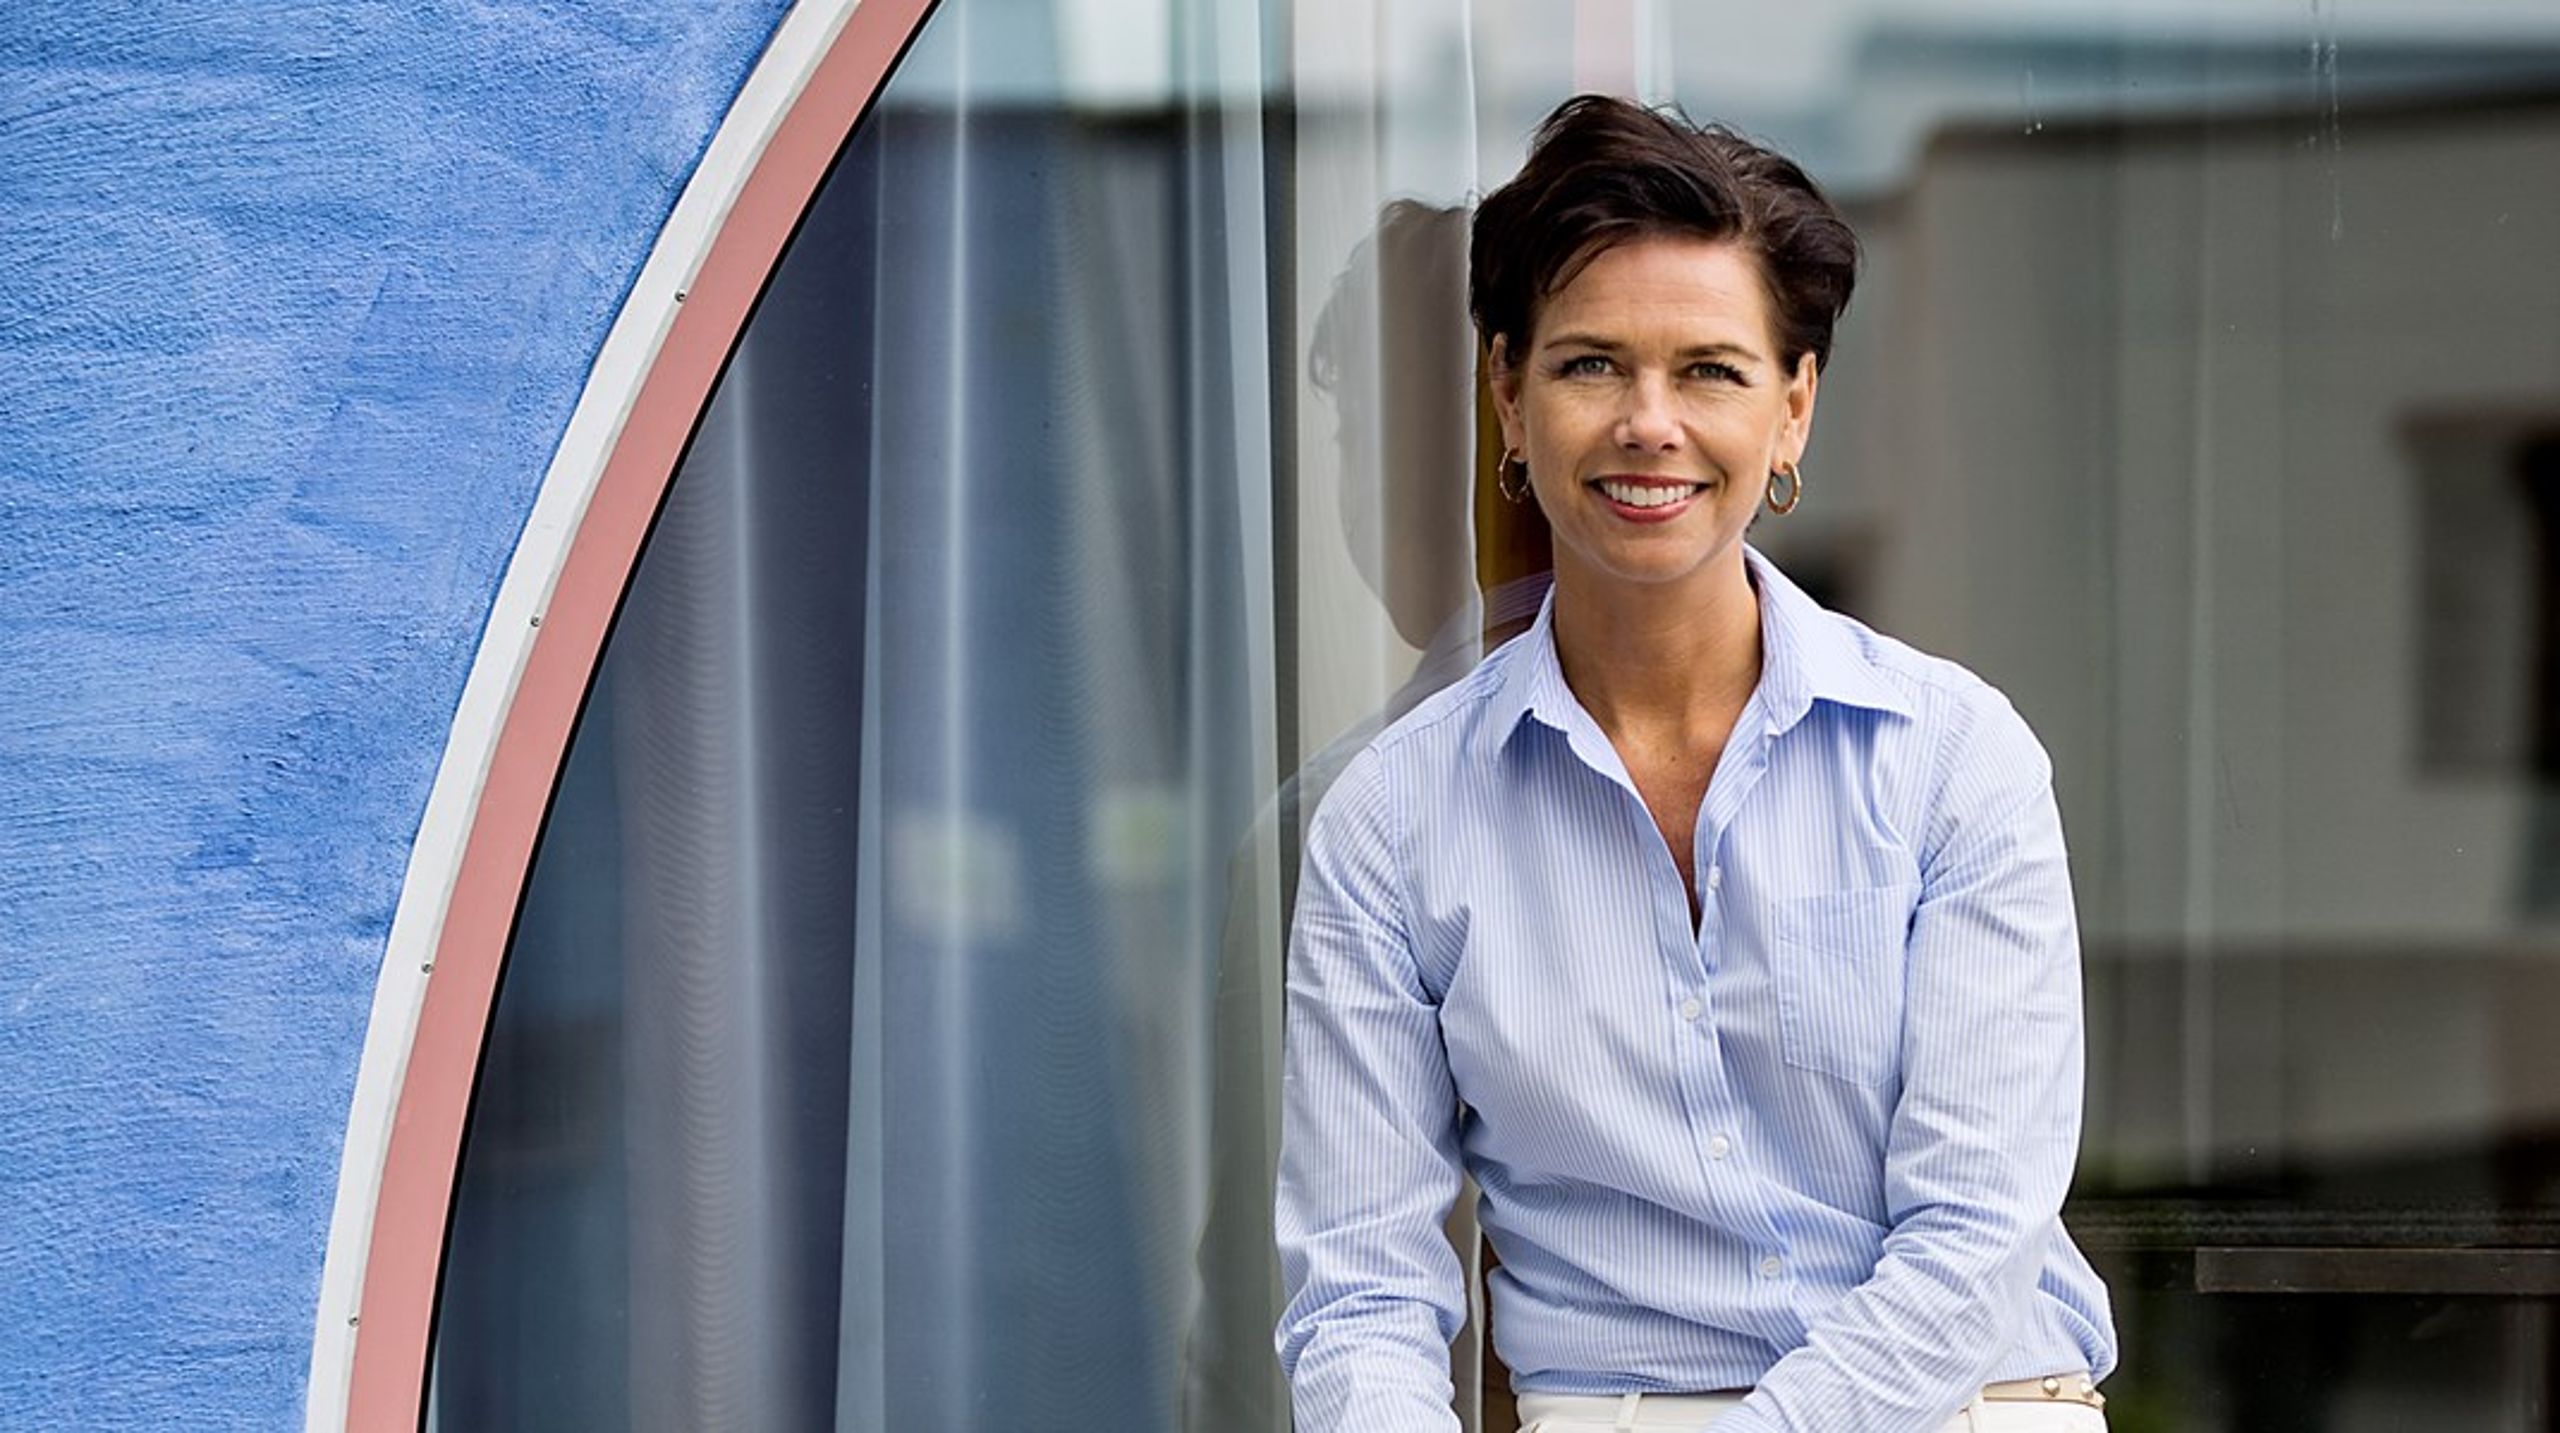 Sofia Larsen är föreslagen som ny ordförande i Friskolornas riksförbund efter Lars Leijonborg.